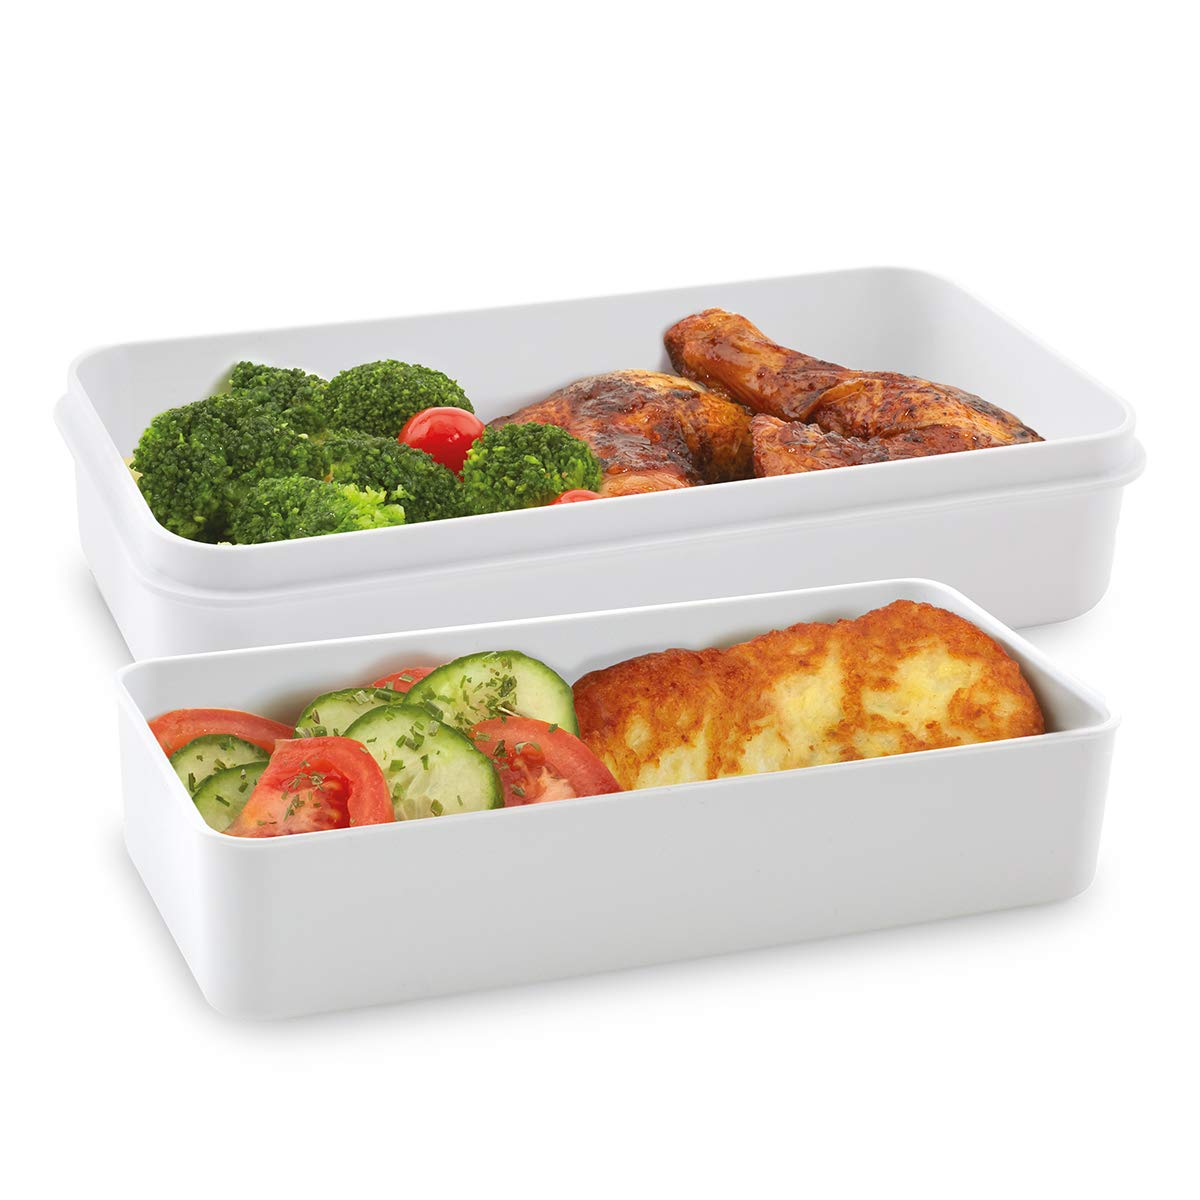 Cloer 800S3-1 Lunch Care System - Bento Box 4-teilig, XXL- Format 2100ml, BPA - frei, Lunchbox, Brotdose für Kinder und Erwachsene zum transportieren von Lebensmitteln